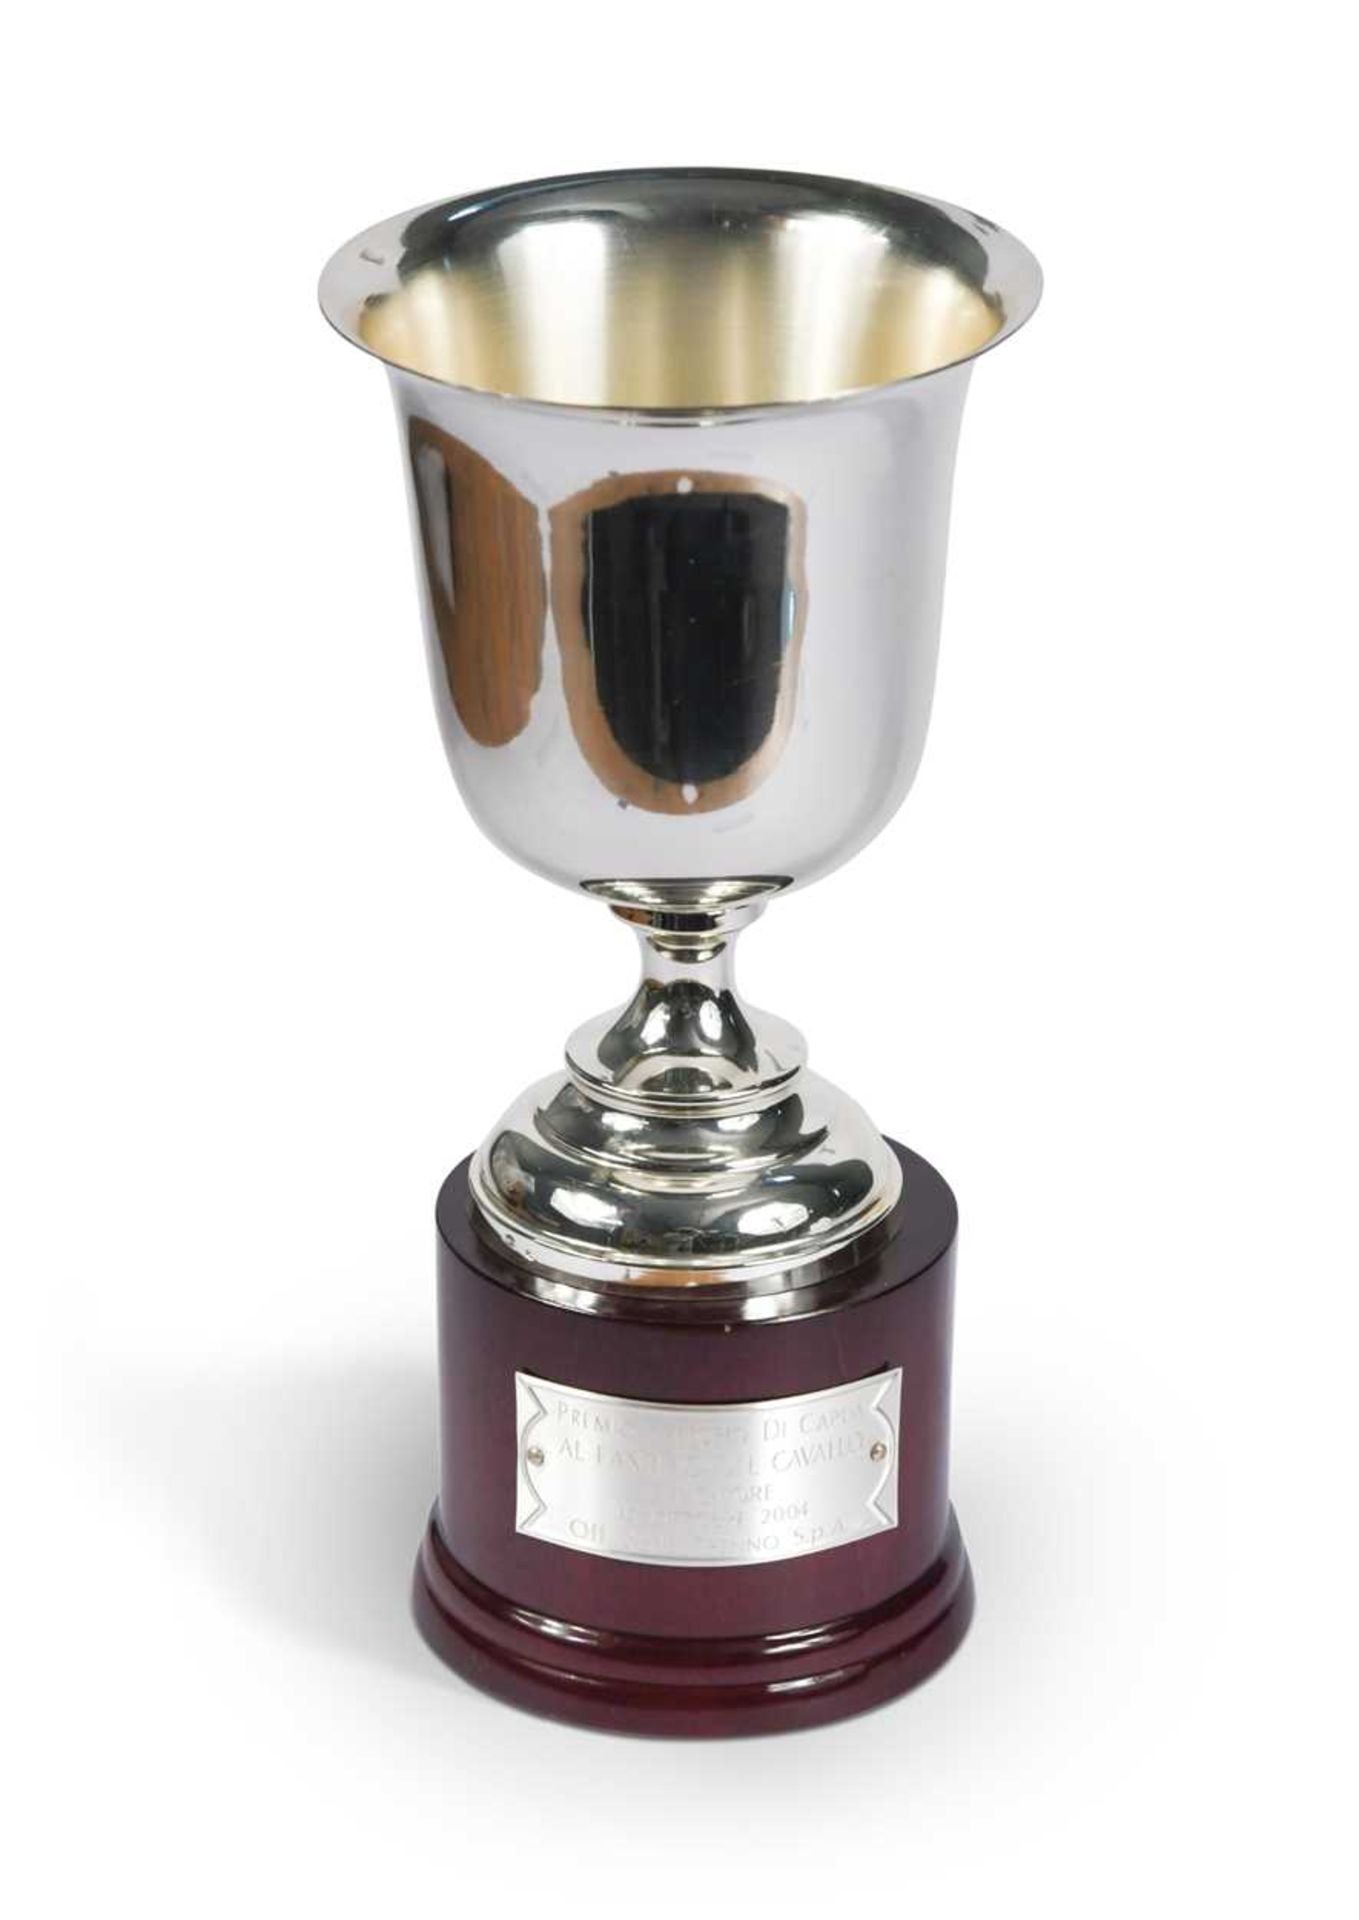 A Premio Vittorio di Capua trophy cup, awarded to Frankie Dettori,